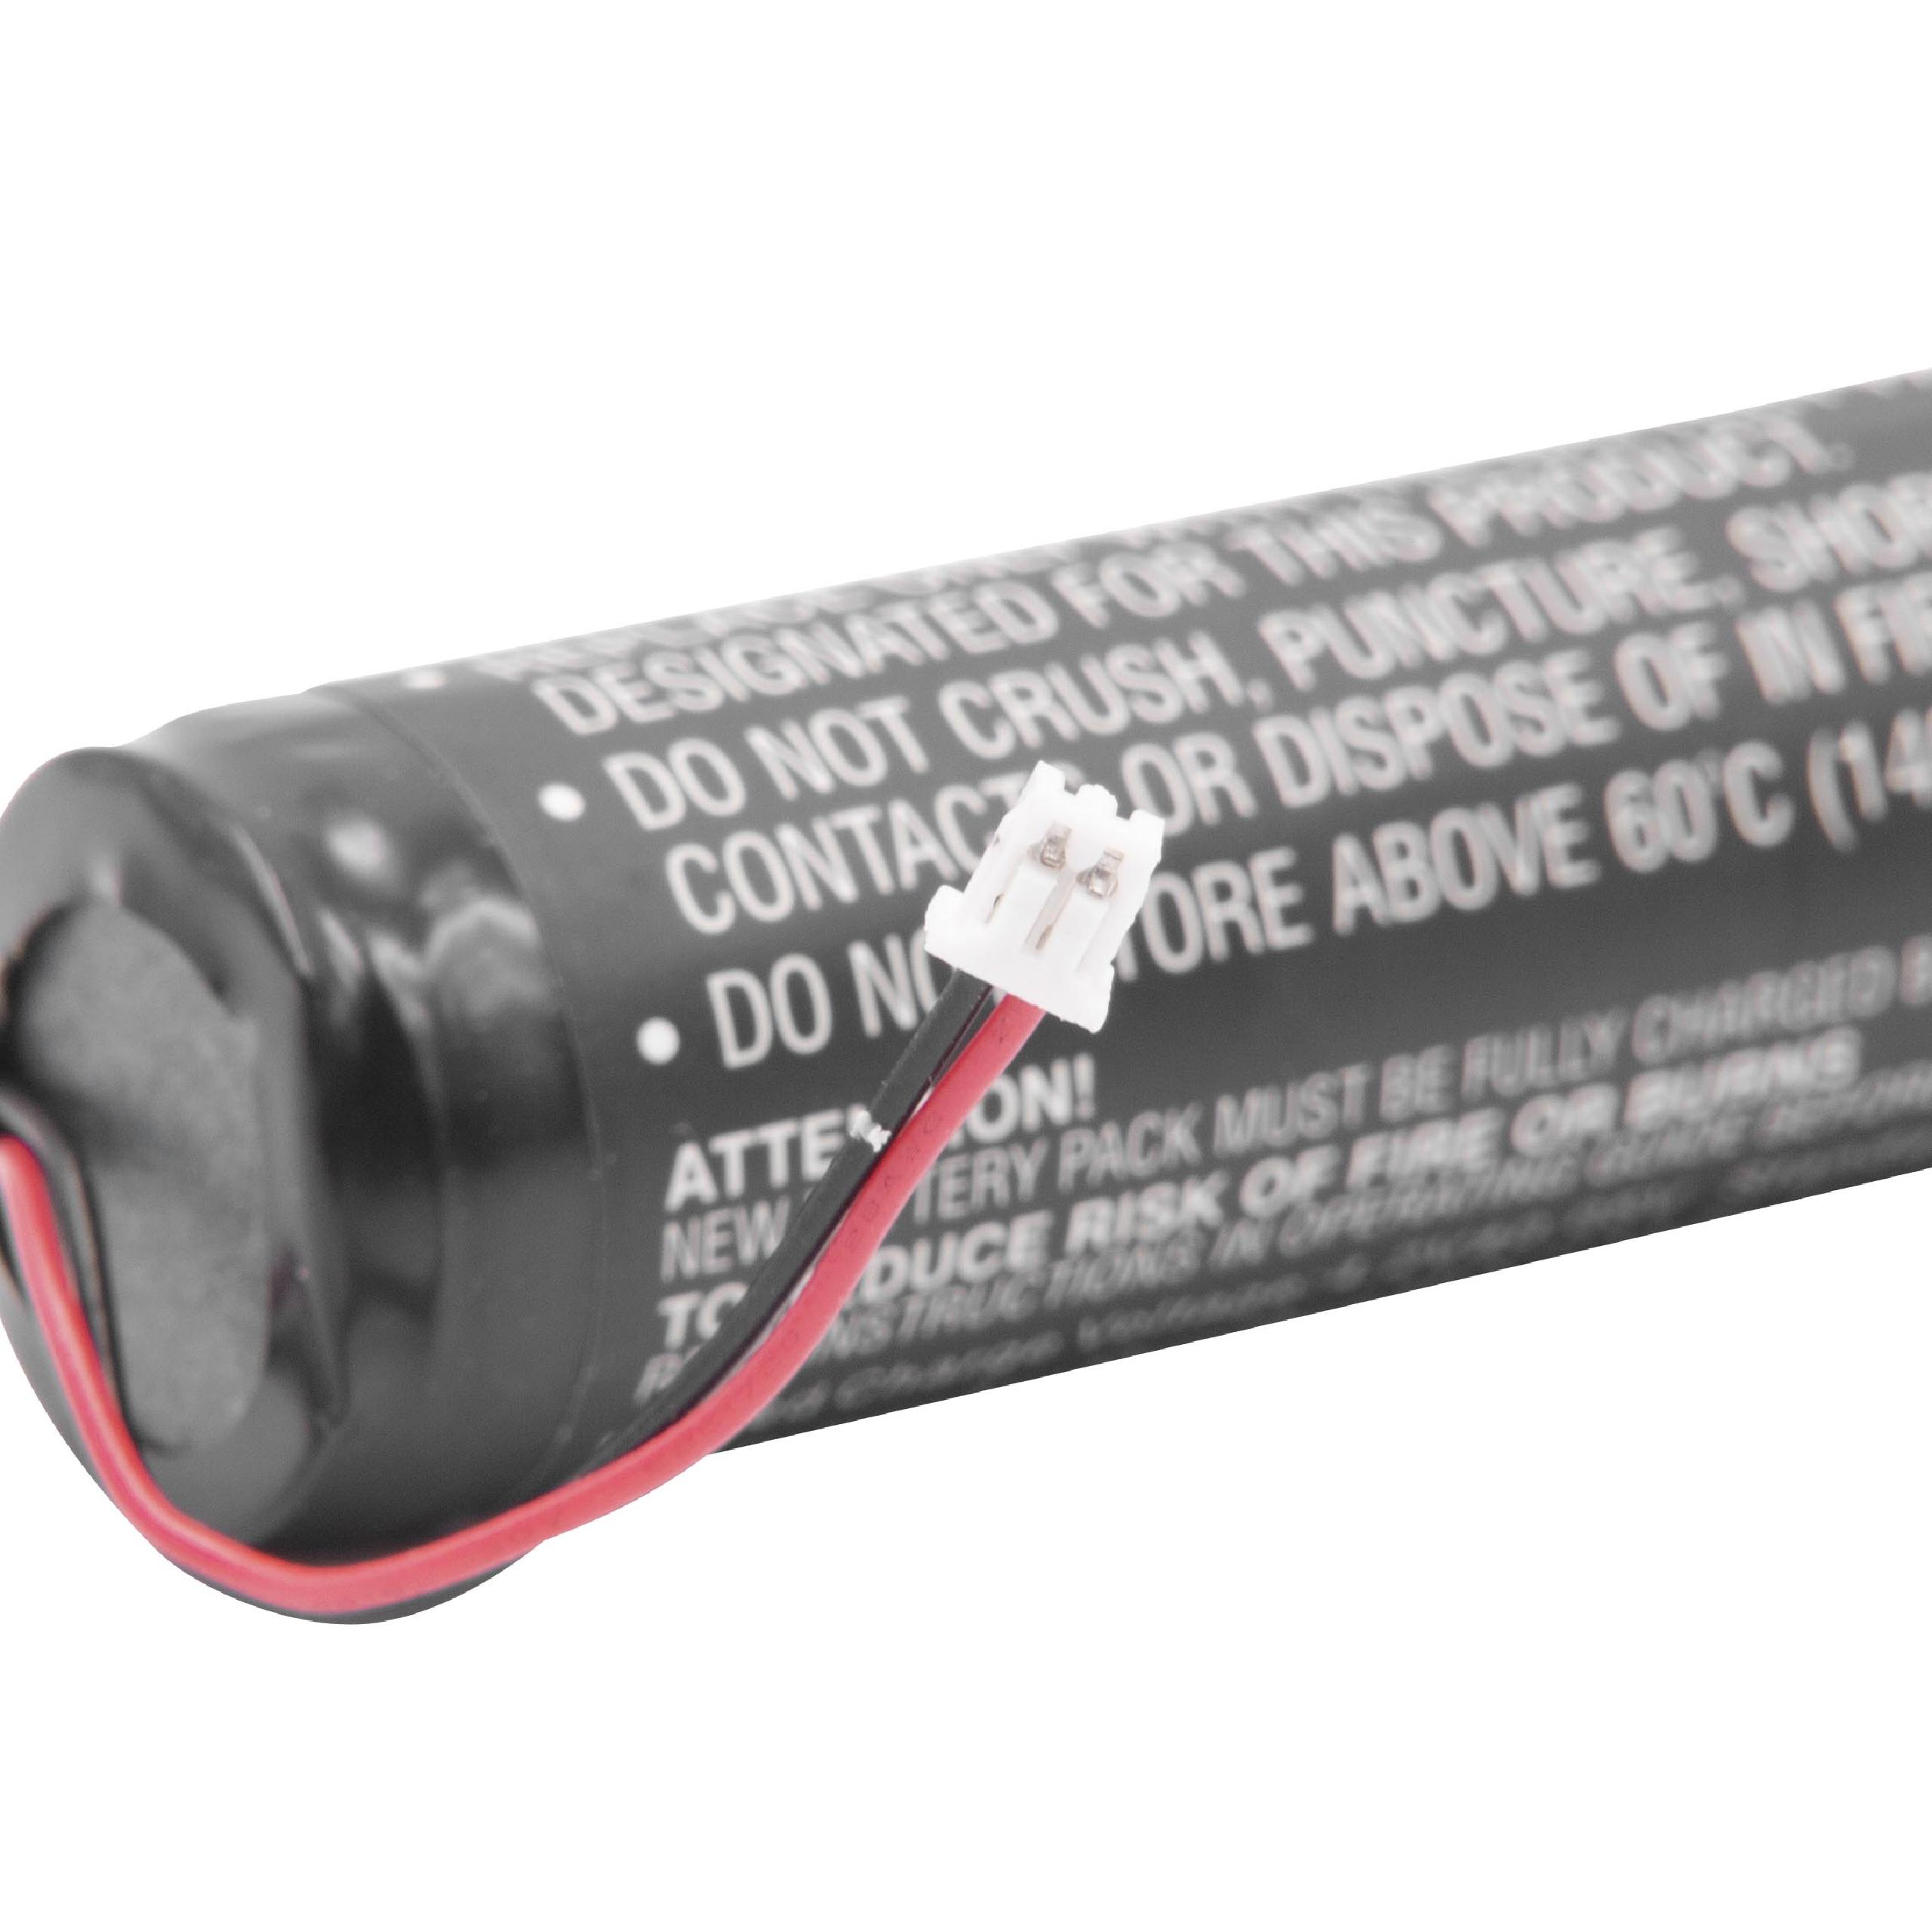 Batterie remplace Eschenbach 1650-1B pour loupe de lecture - 2600mAh 3,7V Li-ion